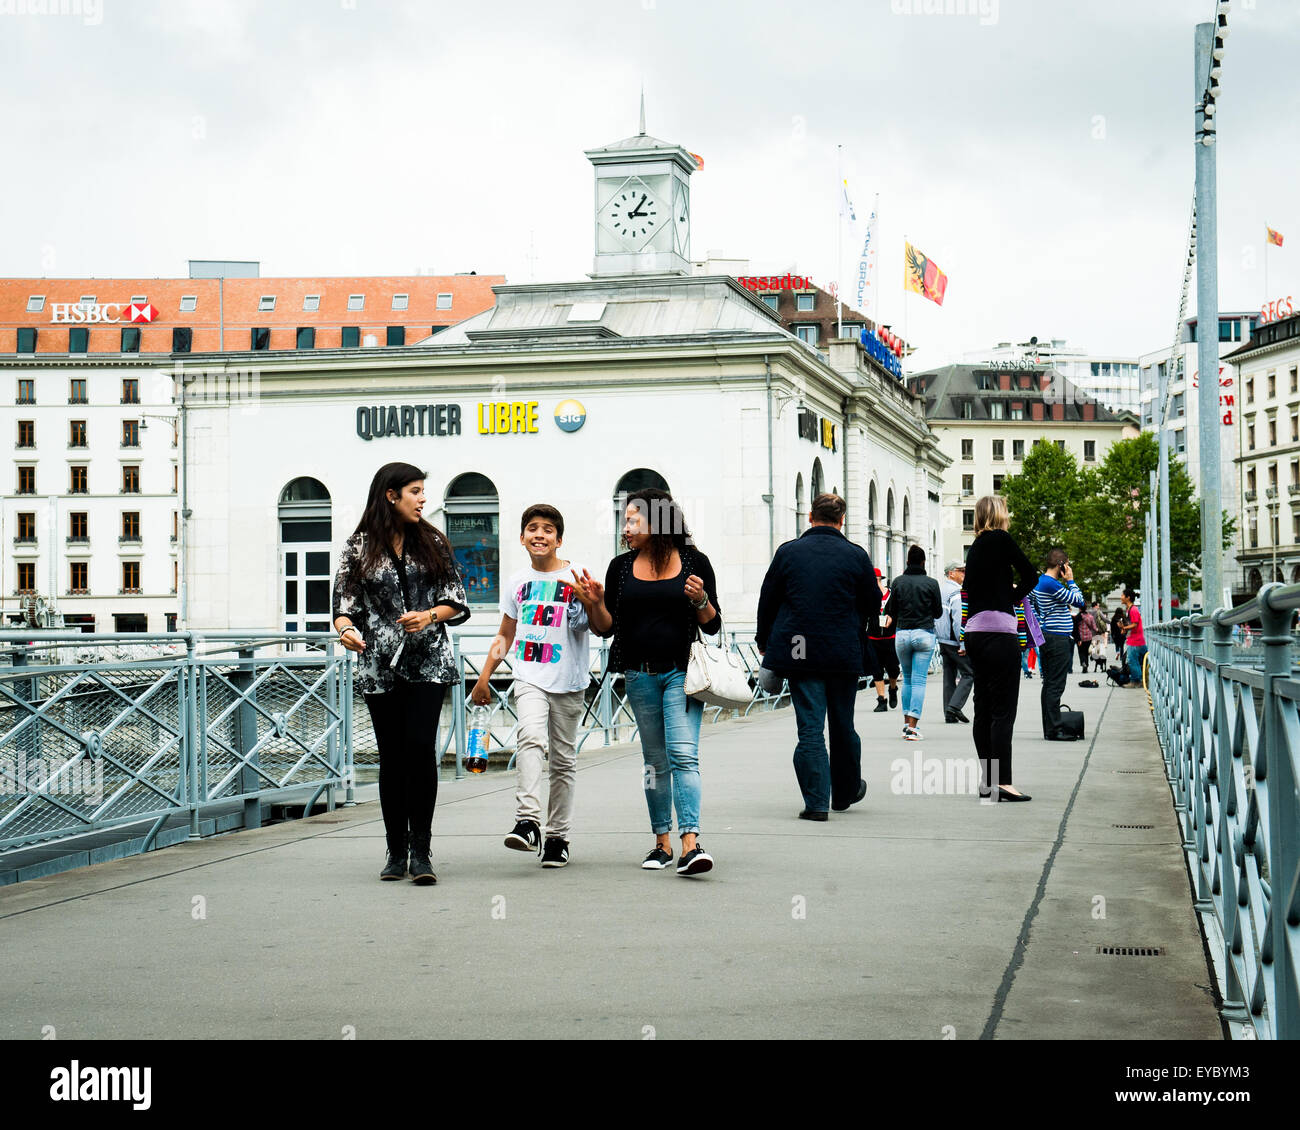 Junge Menschen gehen über eine Brücke in Genf, Schweiz, mit dem Slogan Quartier Libre, was bedeutet "Freie Zeit", dahinter Stockfoto